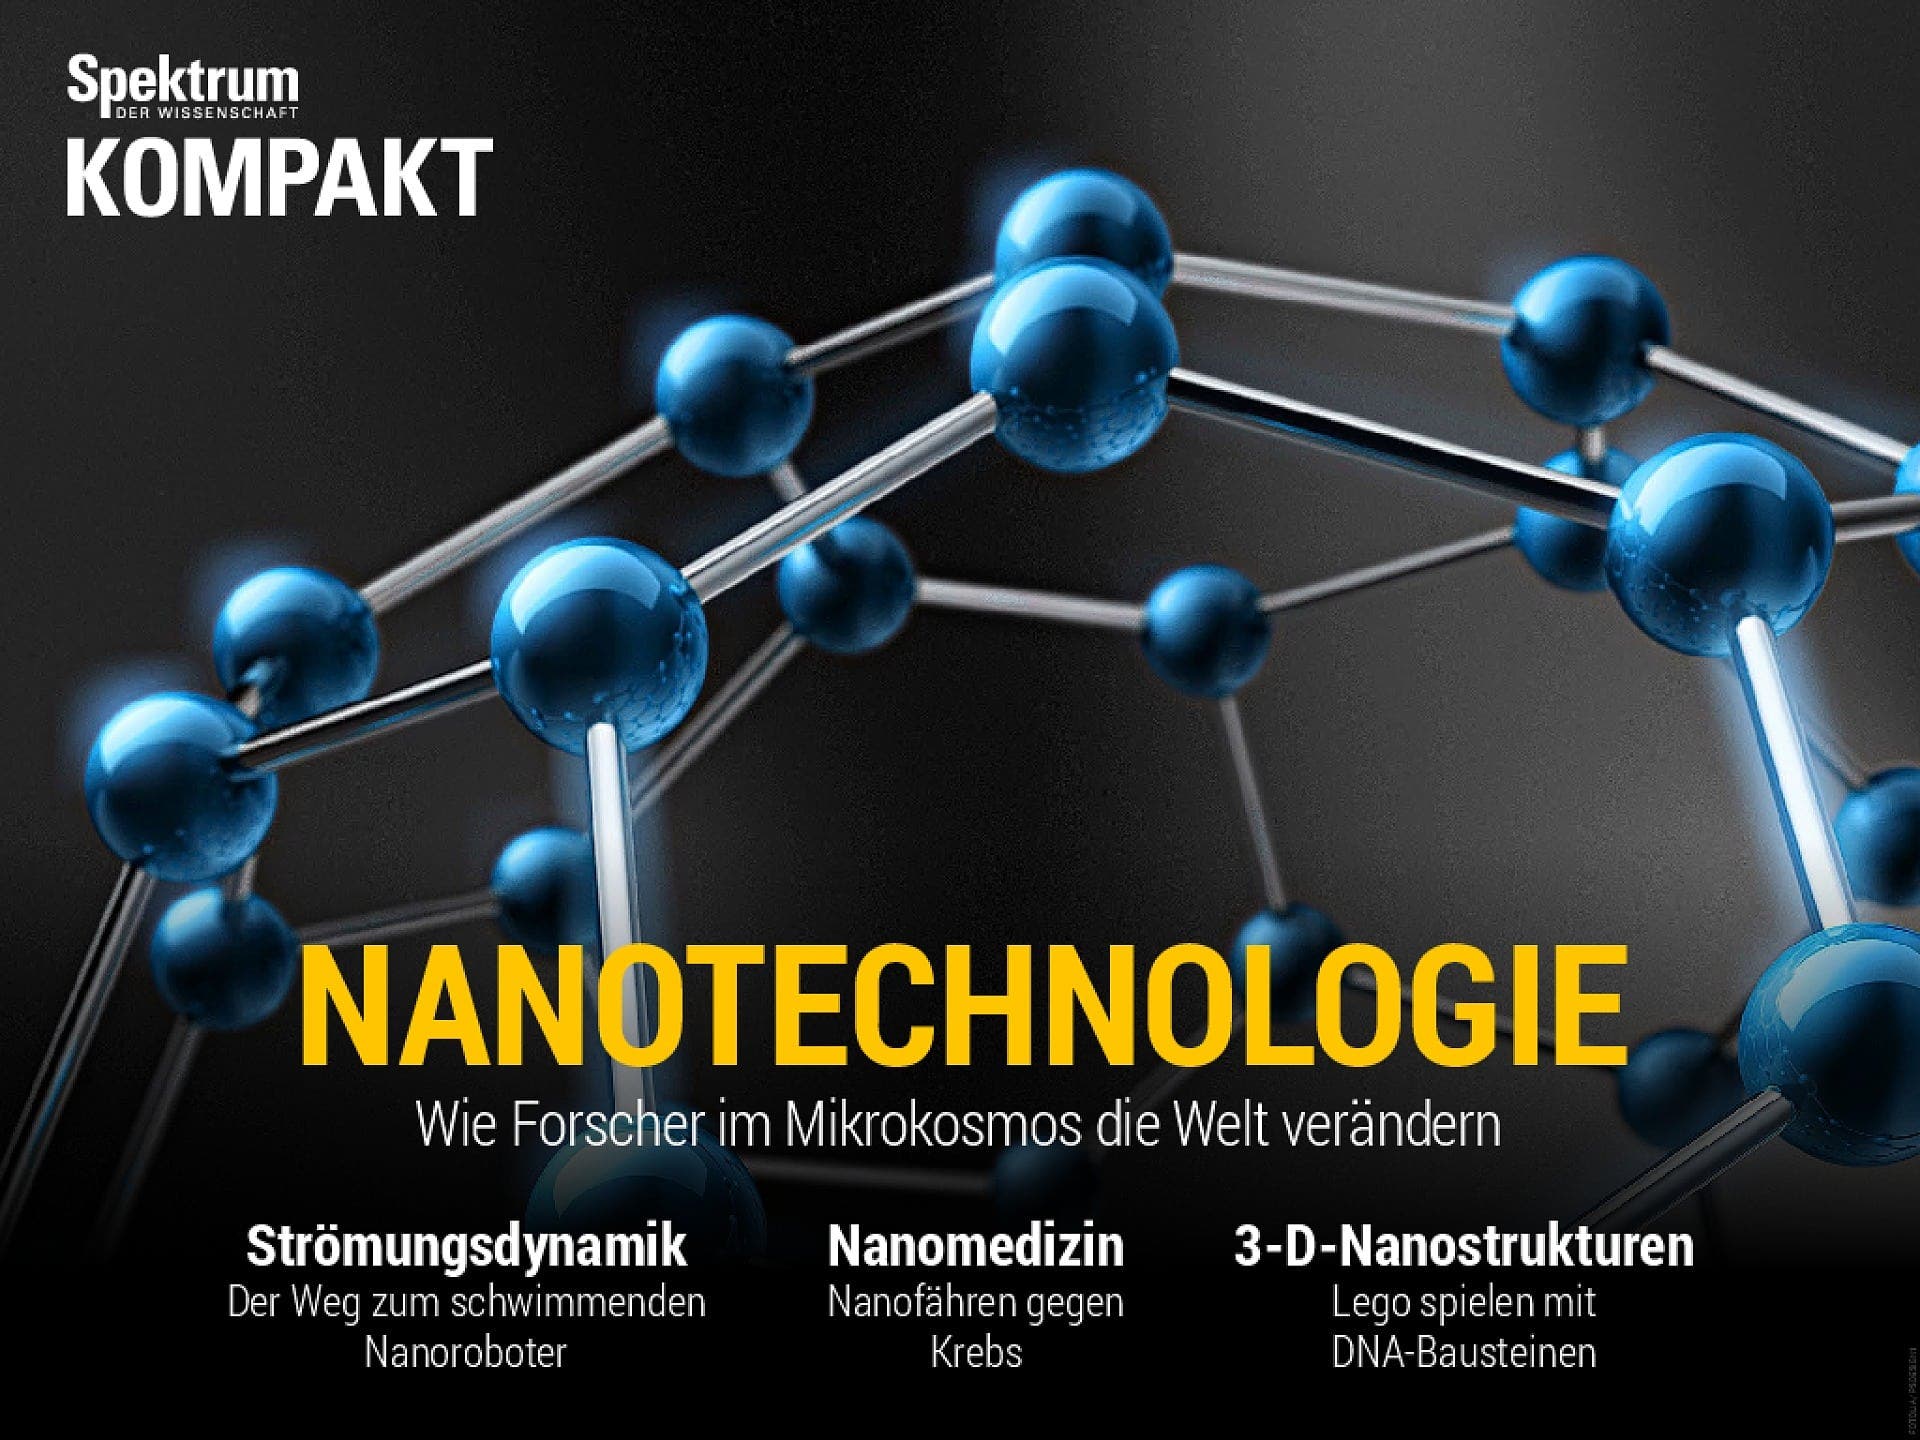 Nanotechnologie - Wie Forscher im Mikrokosmos die Welt verändern